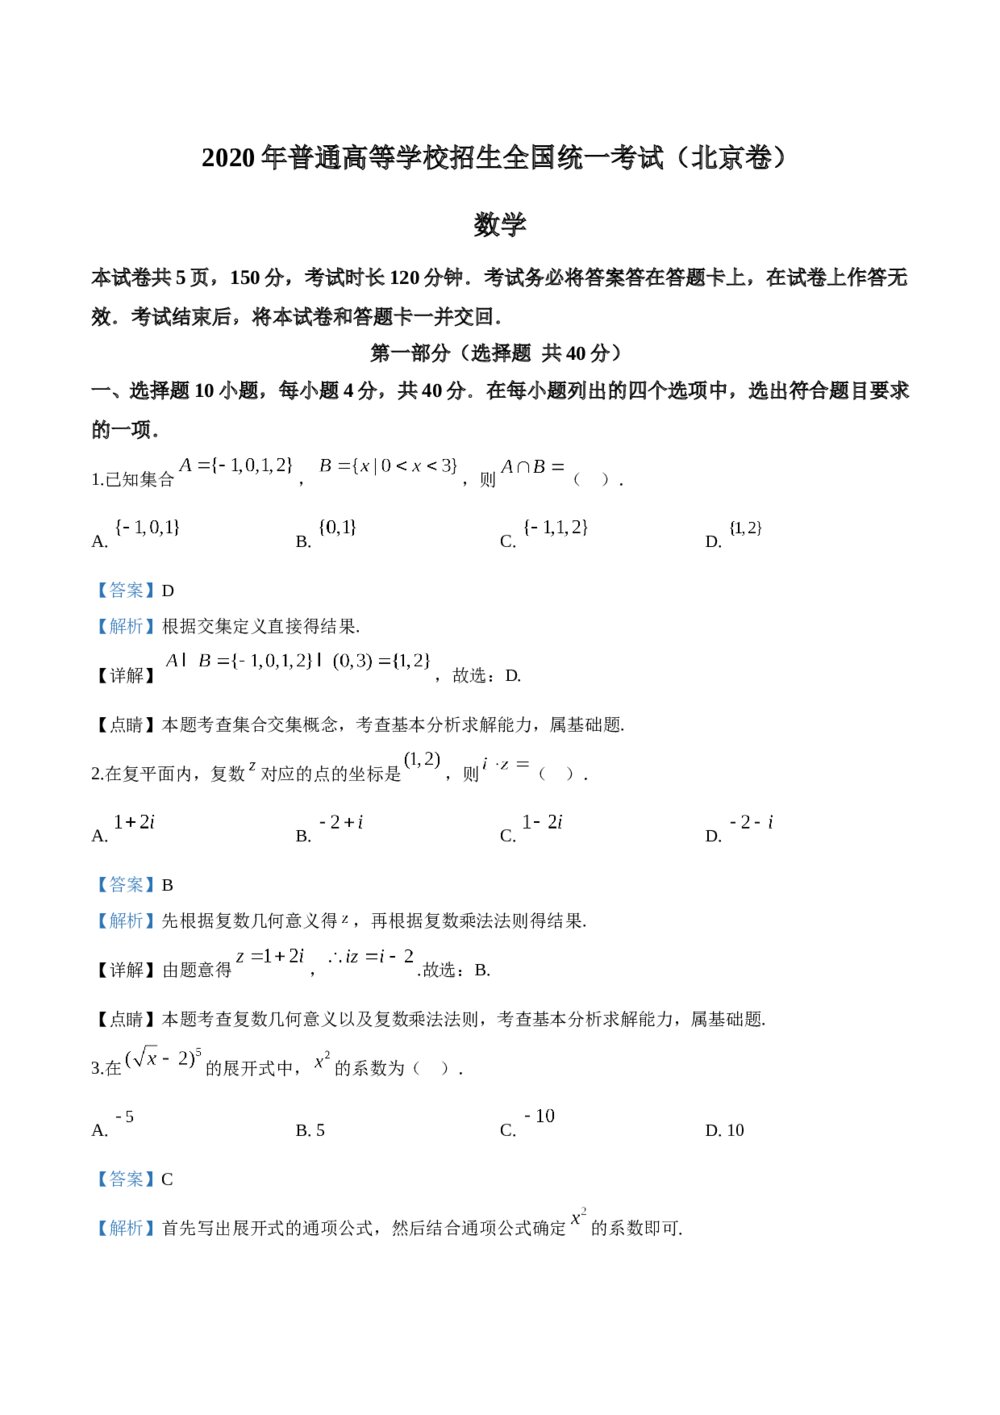 2020年北京市高考数学试卷+(答案解析版)